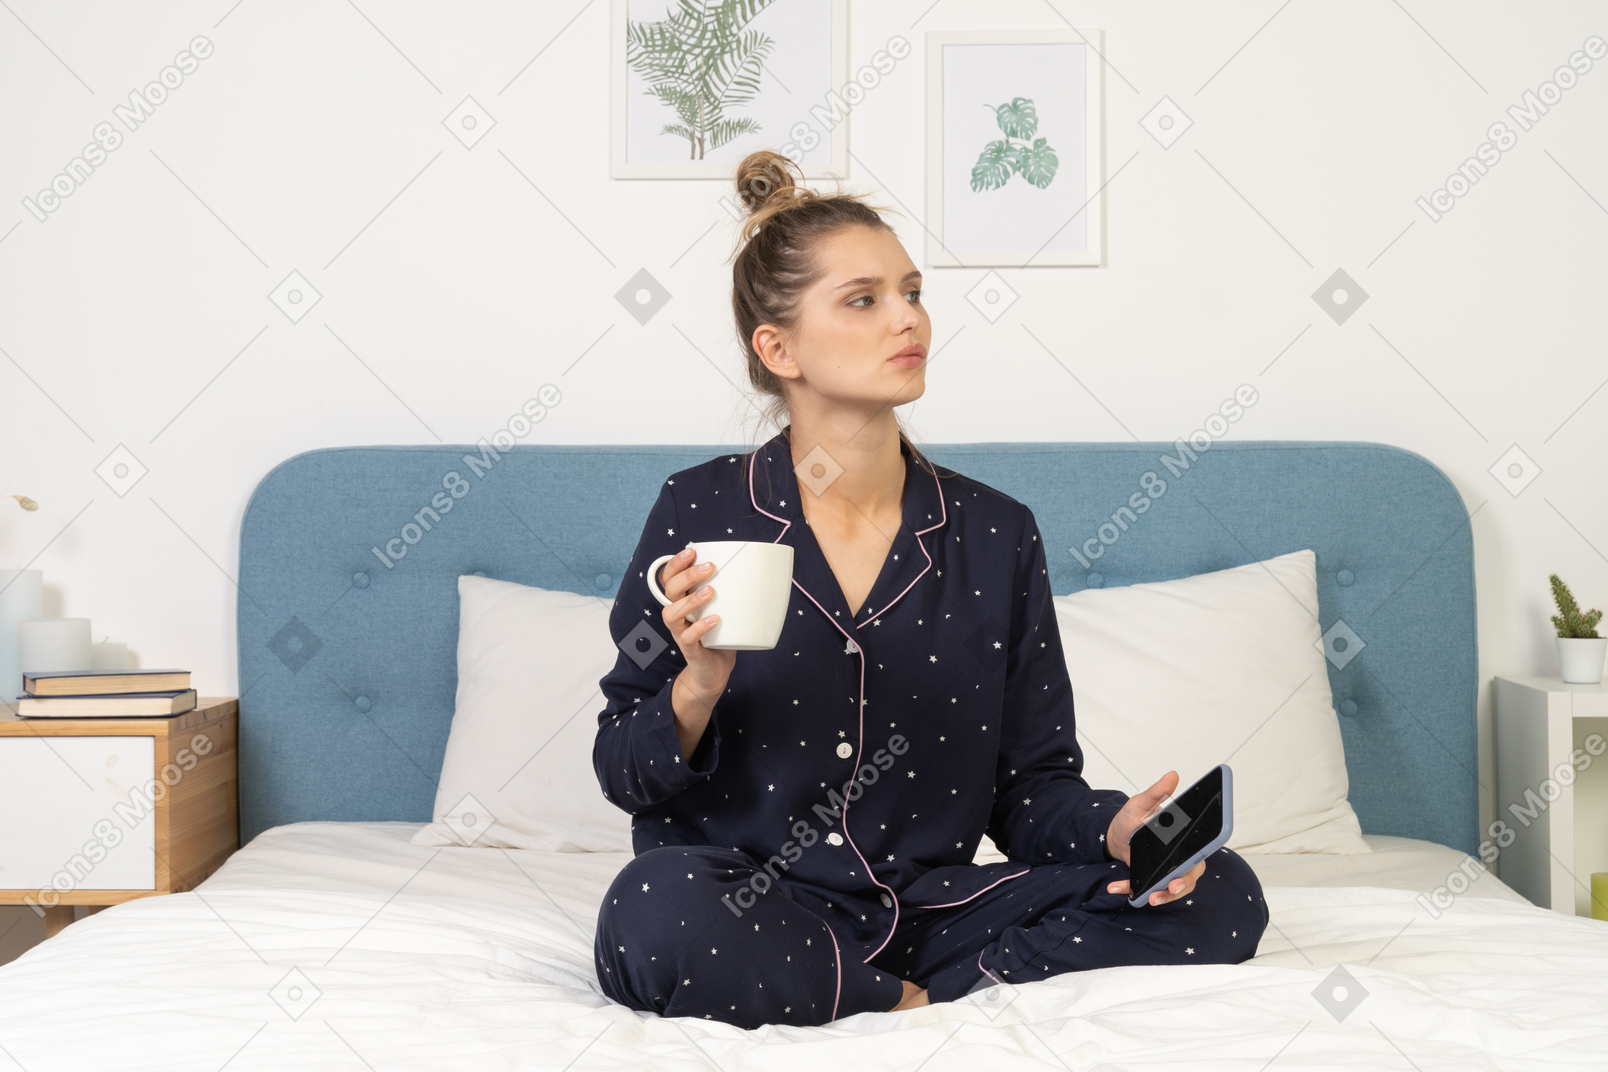 Frente a una mujer joven en pijama sentada en la cama sosteniendo la taza de café y teléfono móvil